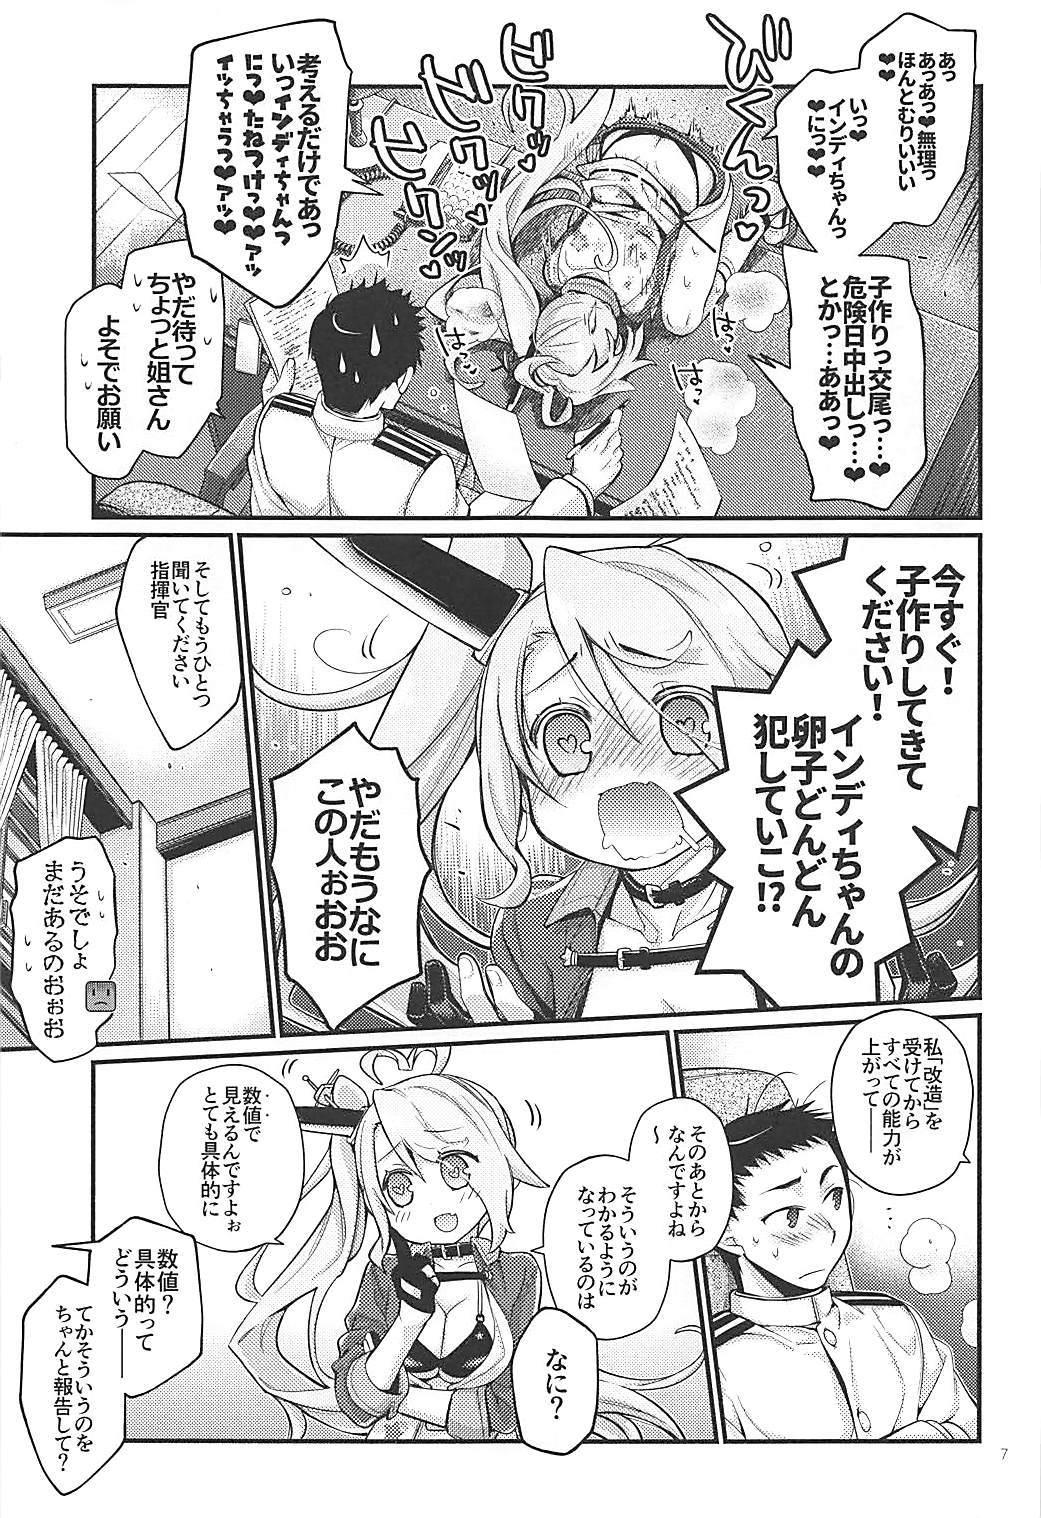 Story Uchi no Imouto wa Sekaiichi Kawaiin desu kedo! 2 - Azur lane Teacher - Page 6